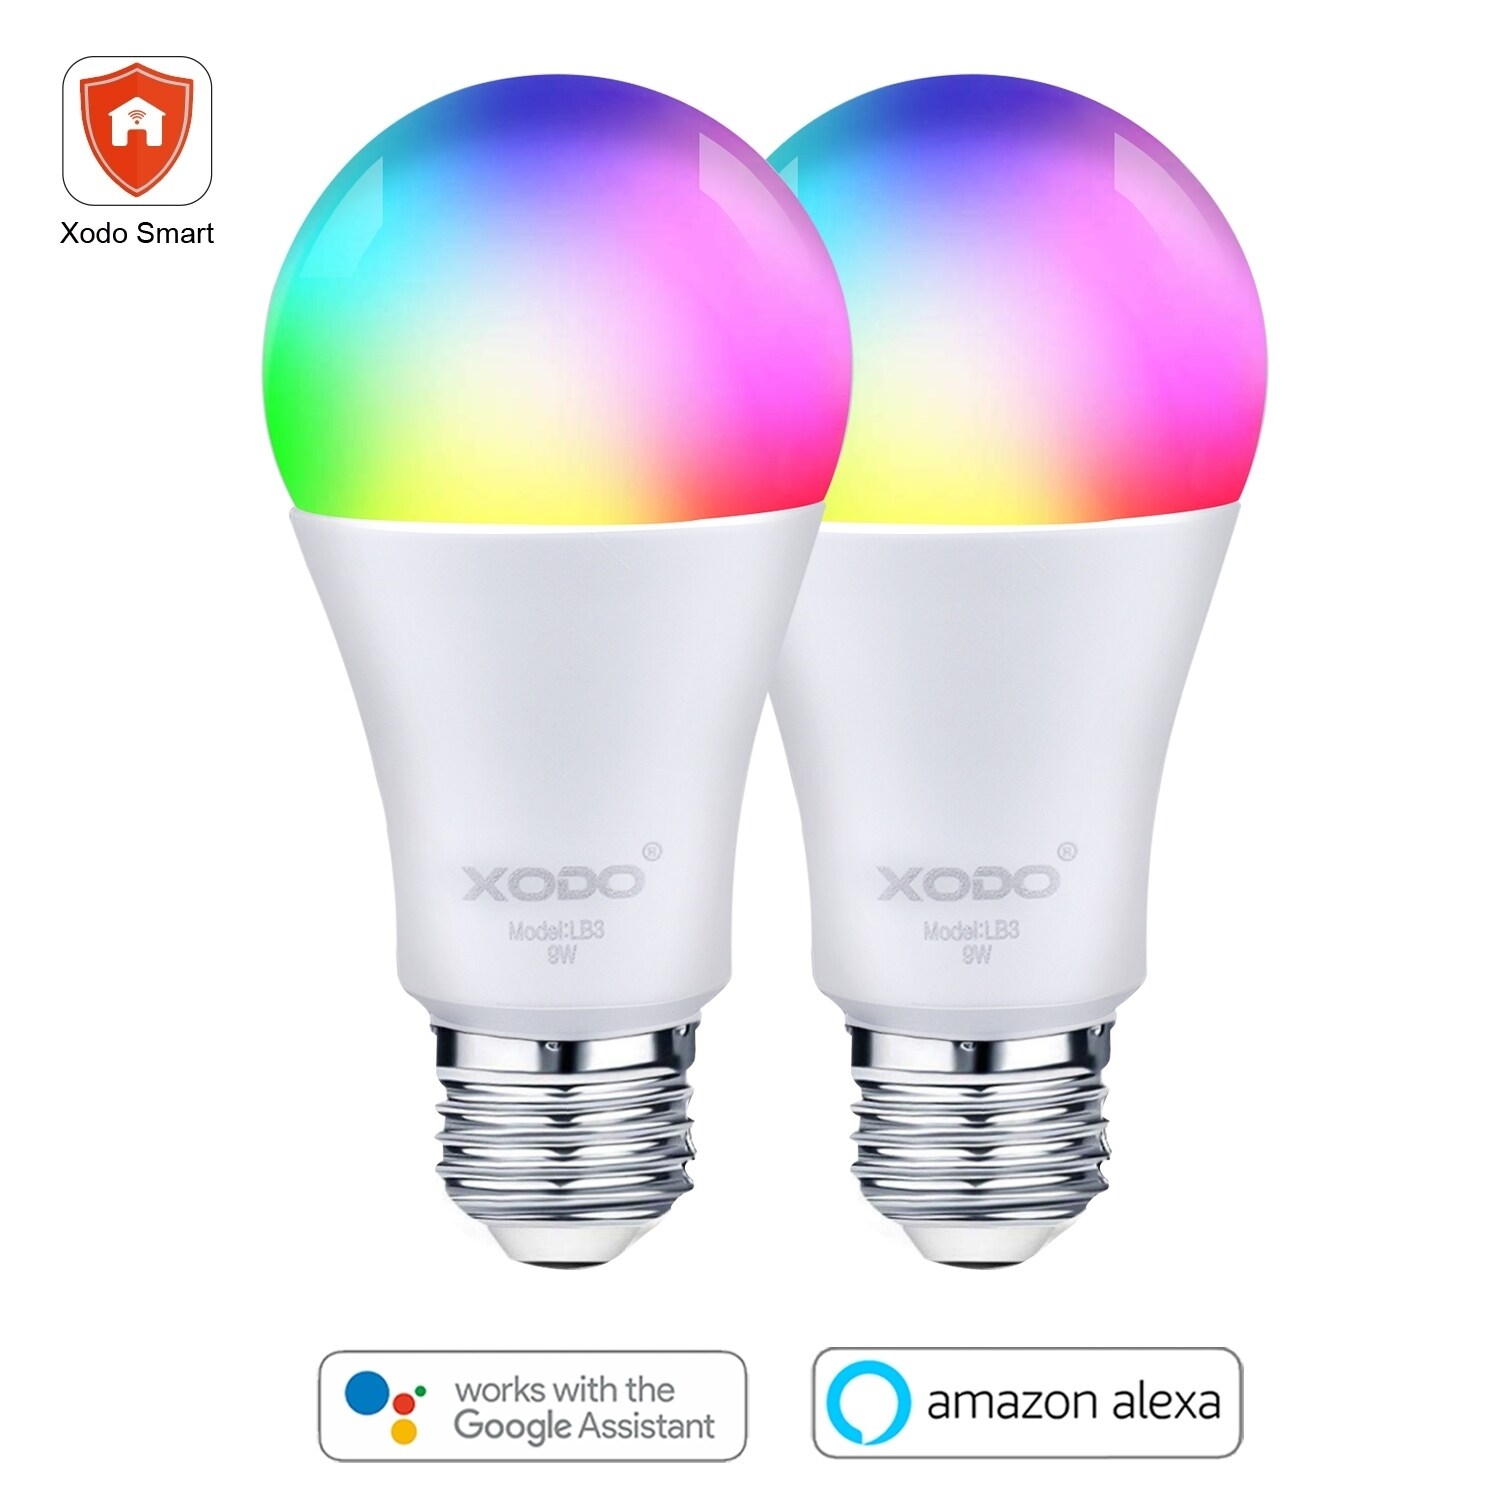 app controlled light bulbs